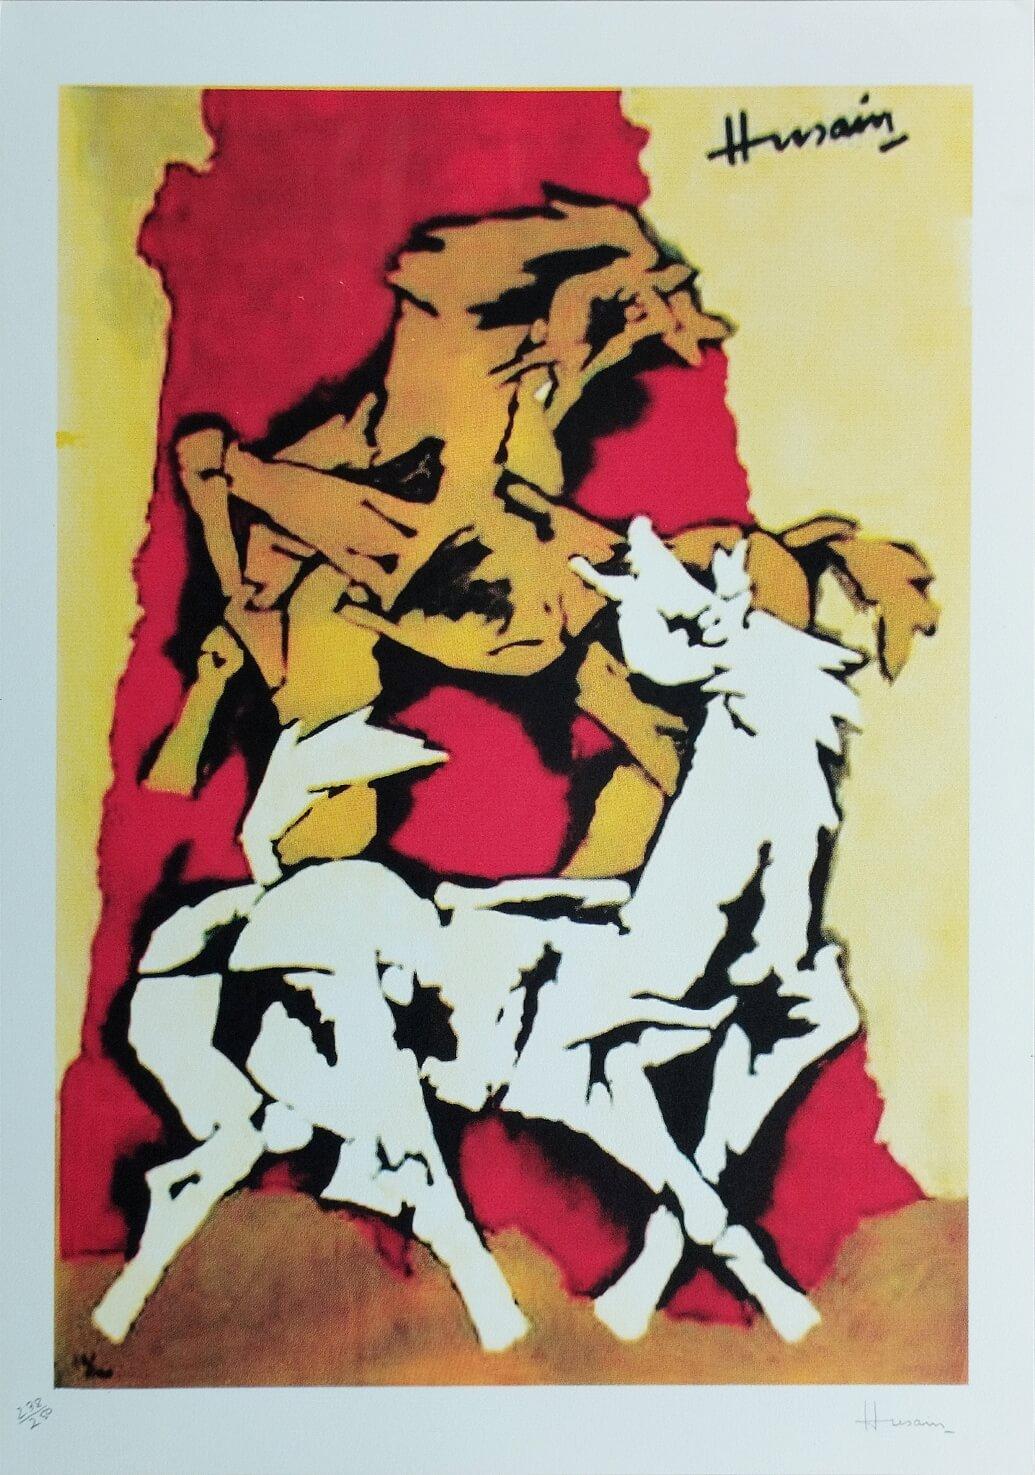 Série de chevaux, sérigraphie sur papier, rouge, jaune, de l'artiste moderne M.F. Husain